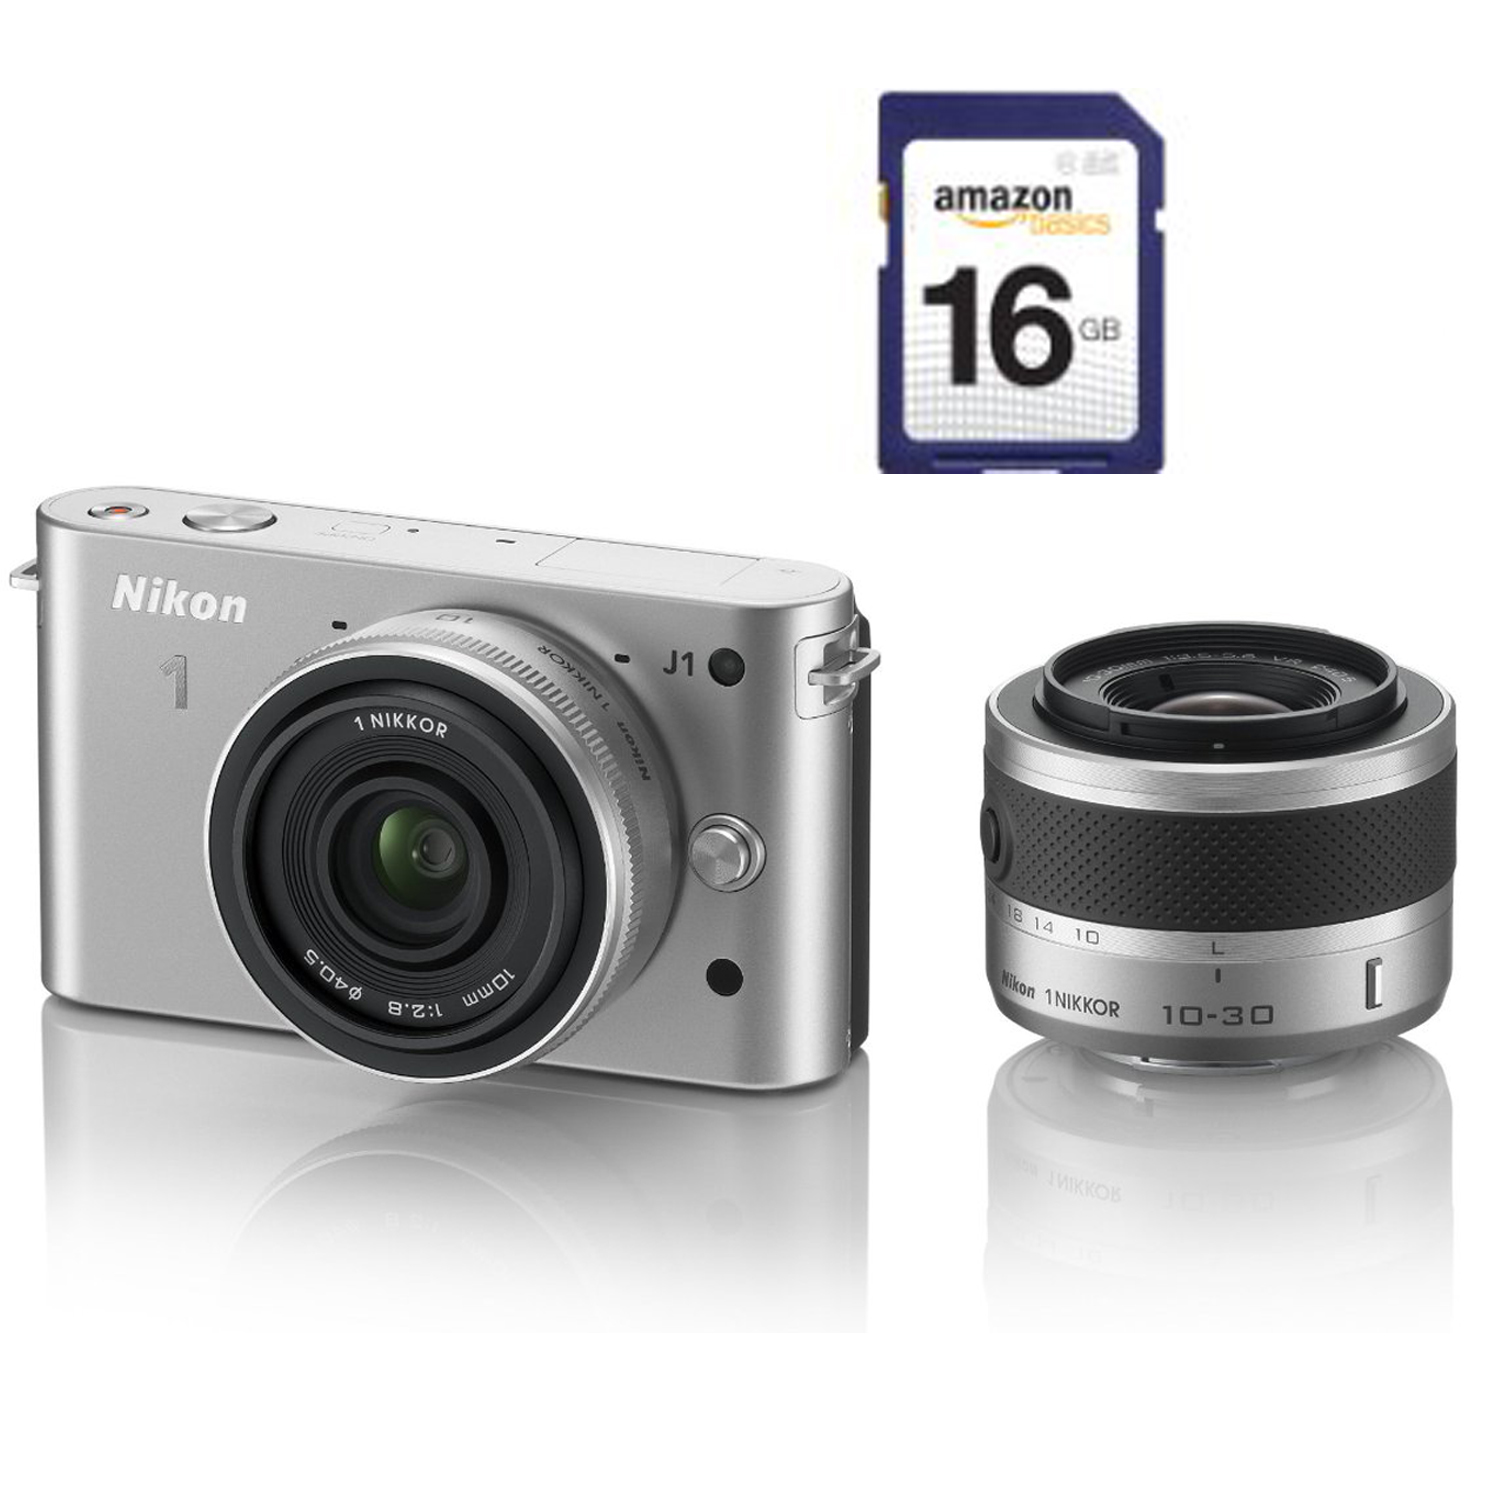 购买一台尼康 Nikon 1系列相机，可同时获赠一张 Amazon Basics 16 GB 内存卡 